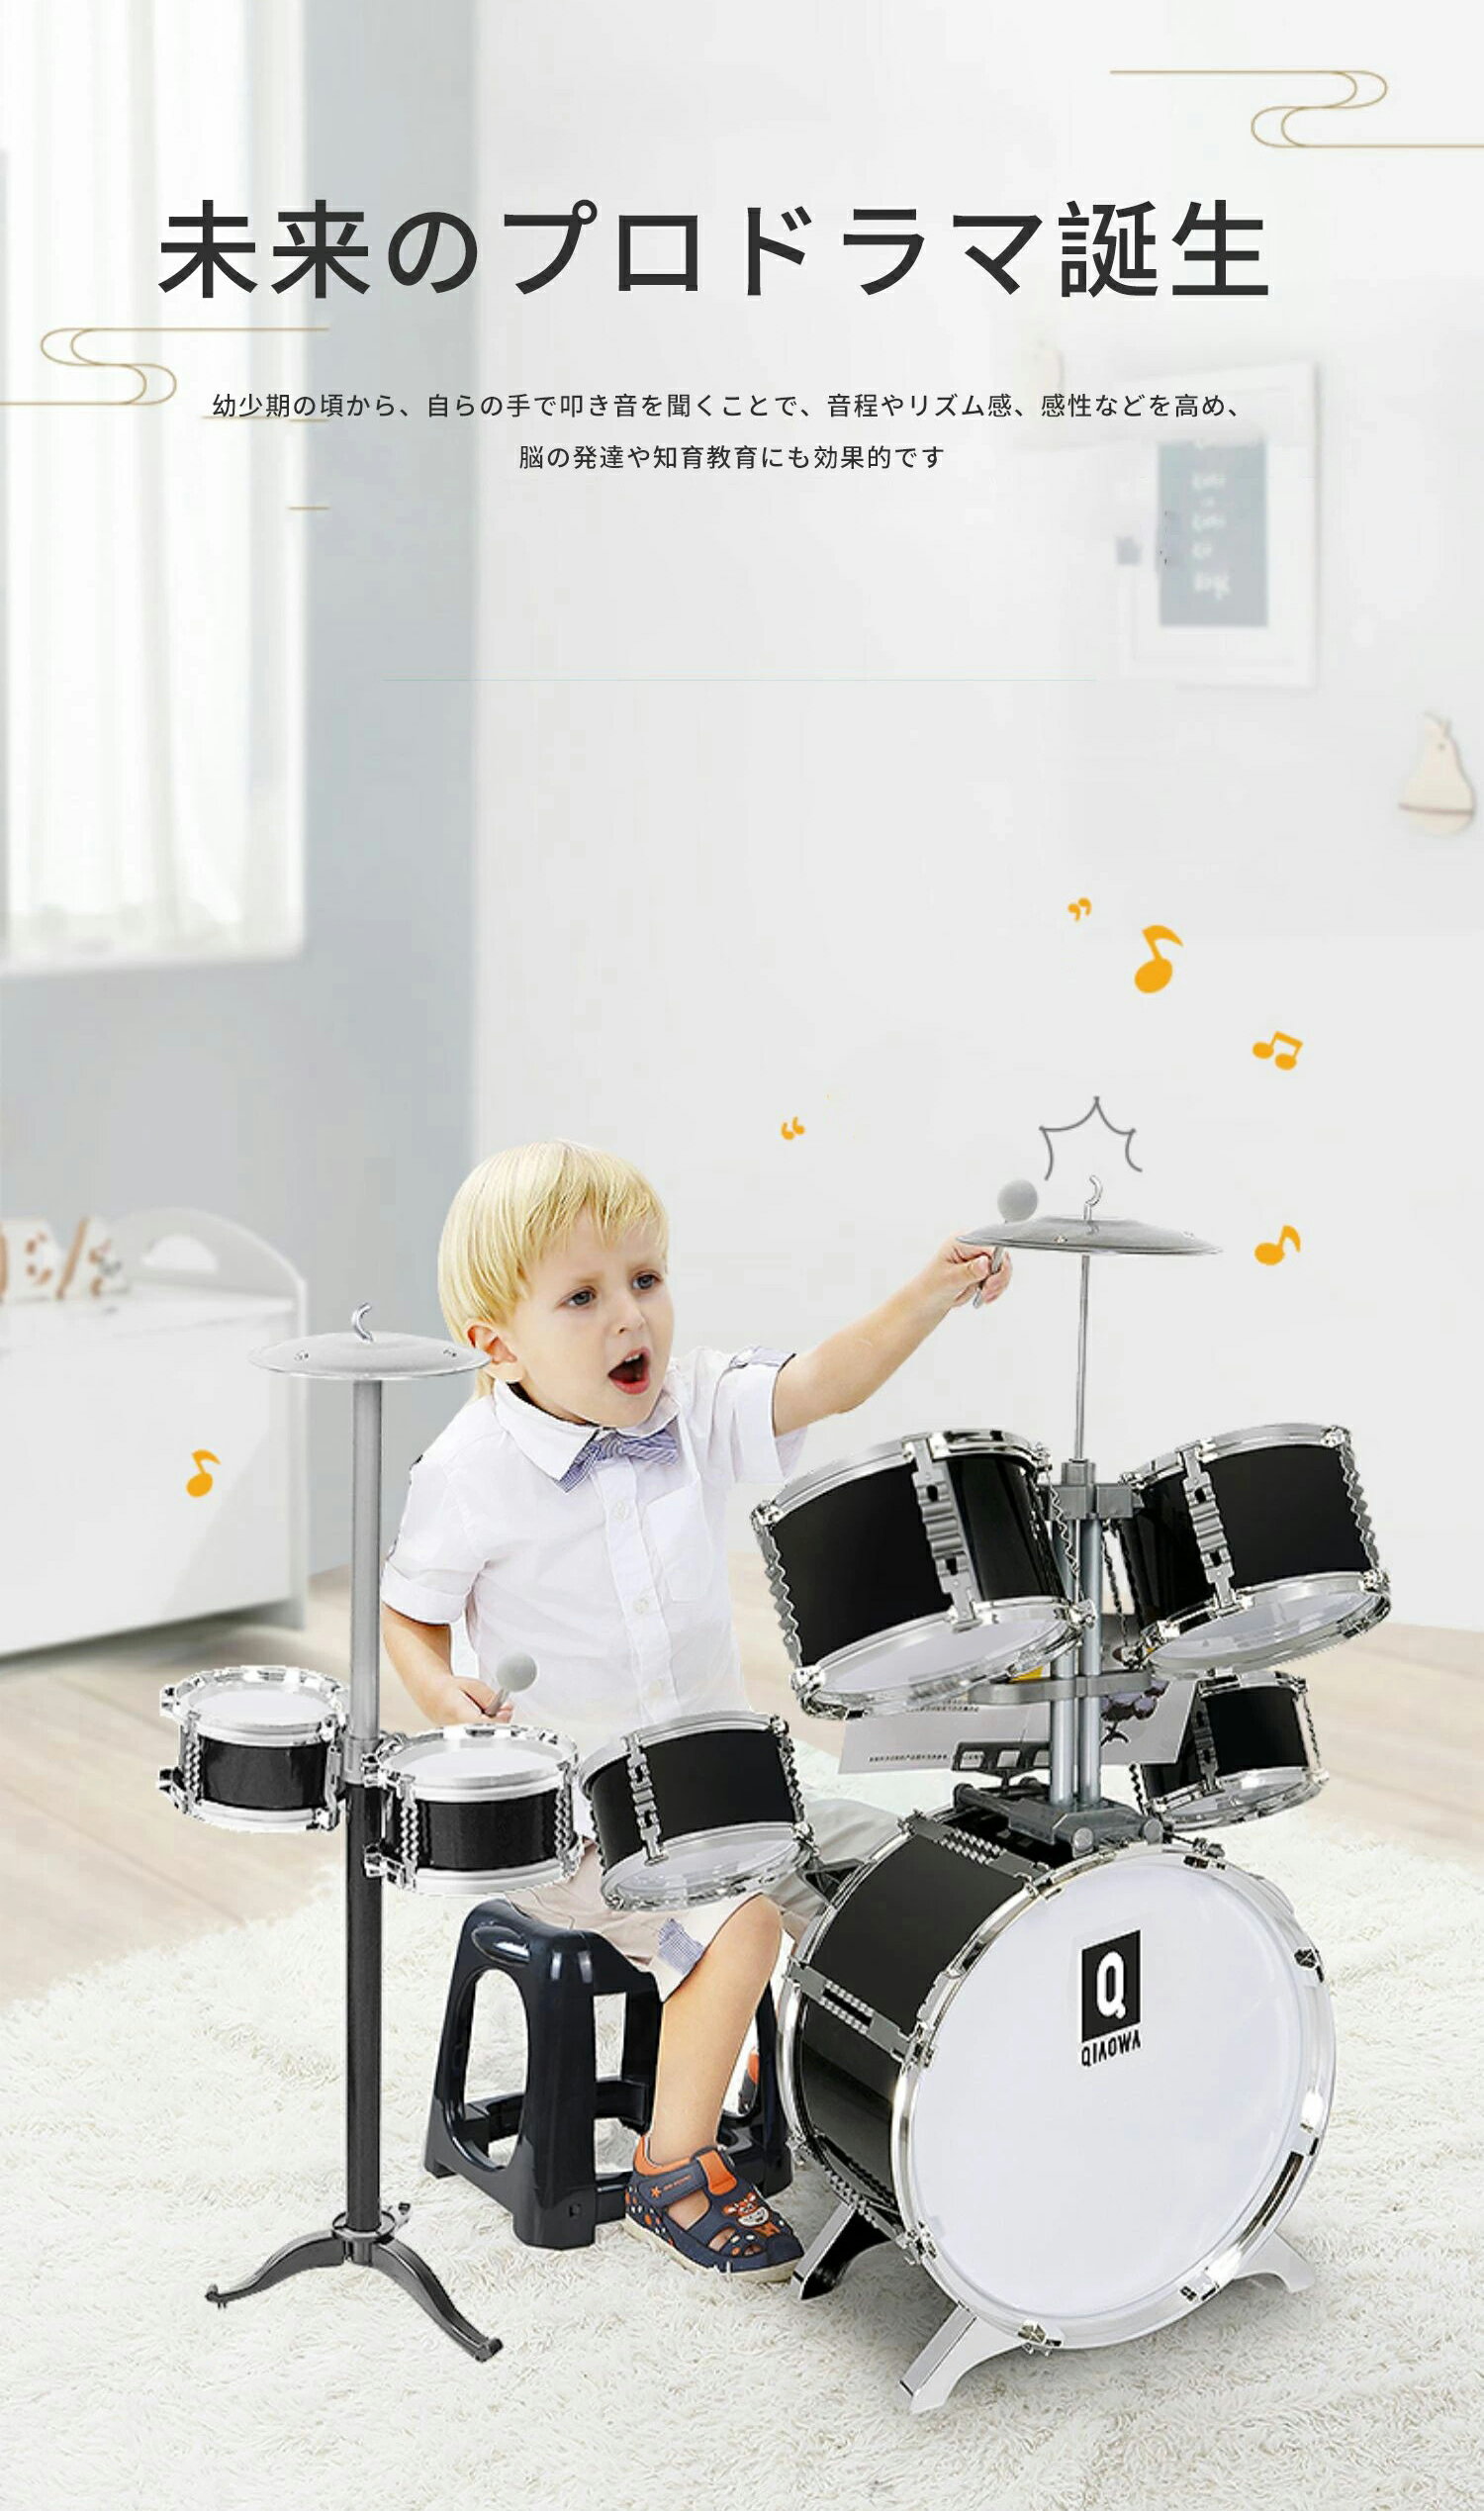 おもちゃのドラム 【スーパーSALE限定価格】ドラムセット 子供 ミニドラムセット ドラム 子供 2Color ドラムセット キッズ ドラムセット おもちゃ 女の子 男の子 子供 ドラム セット 子供 おもちゃ お誕生日プレゼント